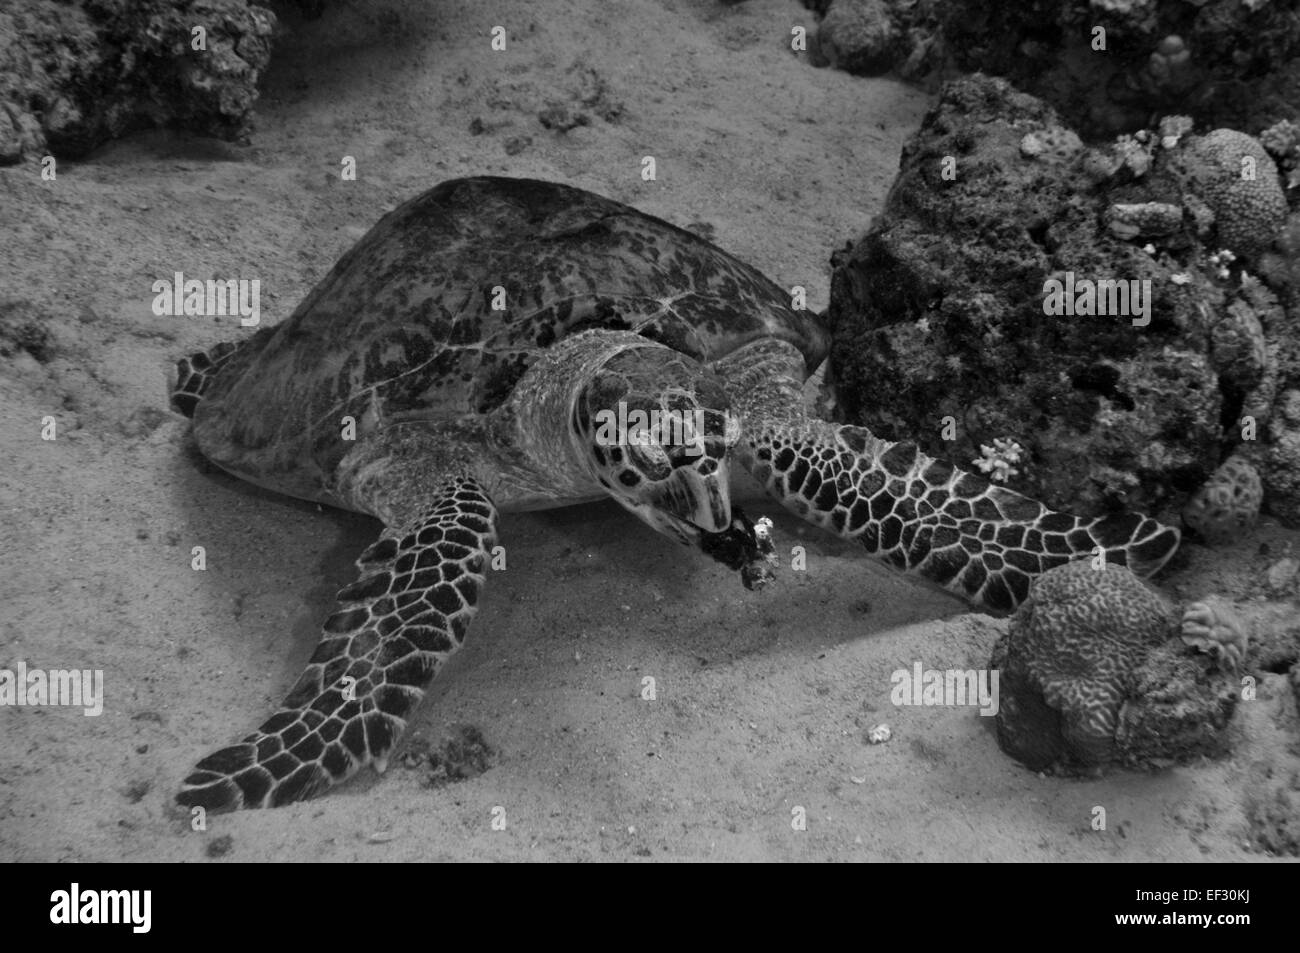 La tortuga carey, Eretmochelys imbricata, comiendo una esponja del Mar Rojo, Eilat, Israel Foto de stock